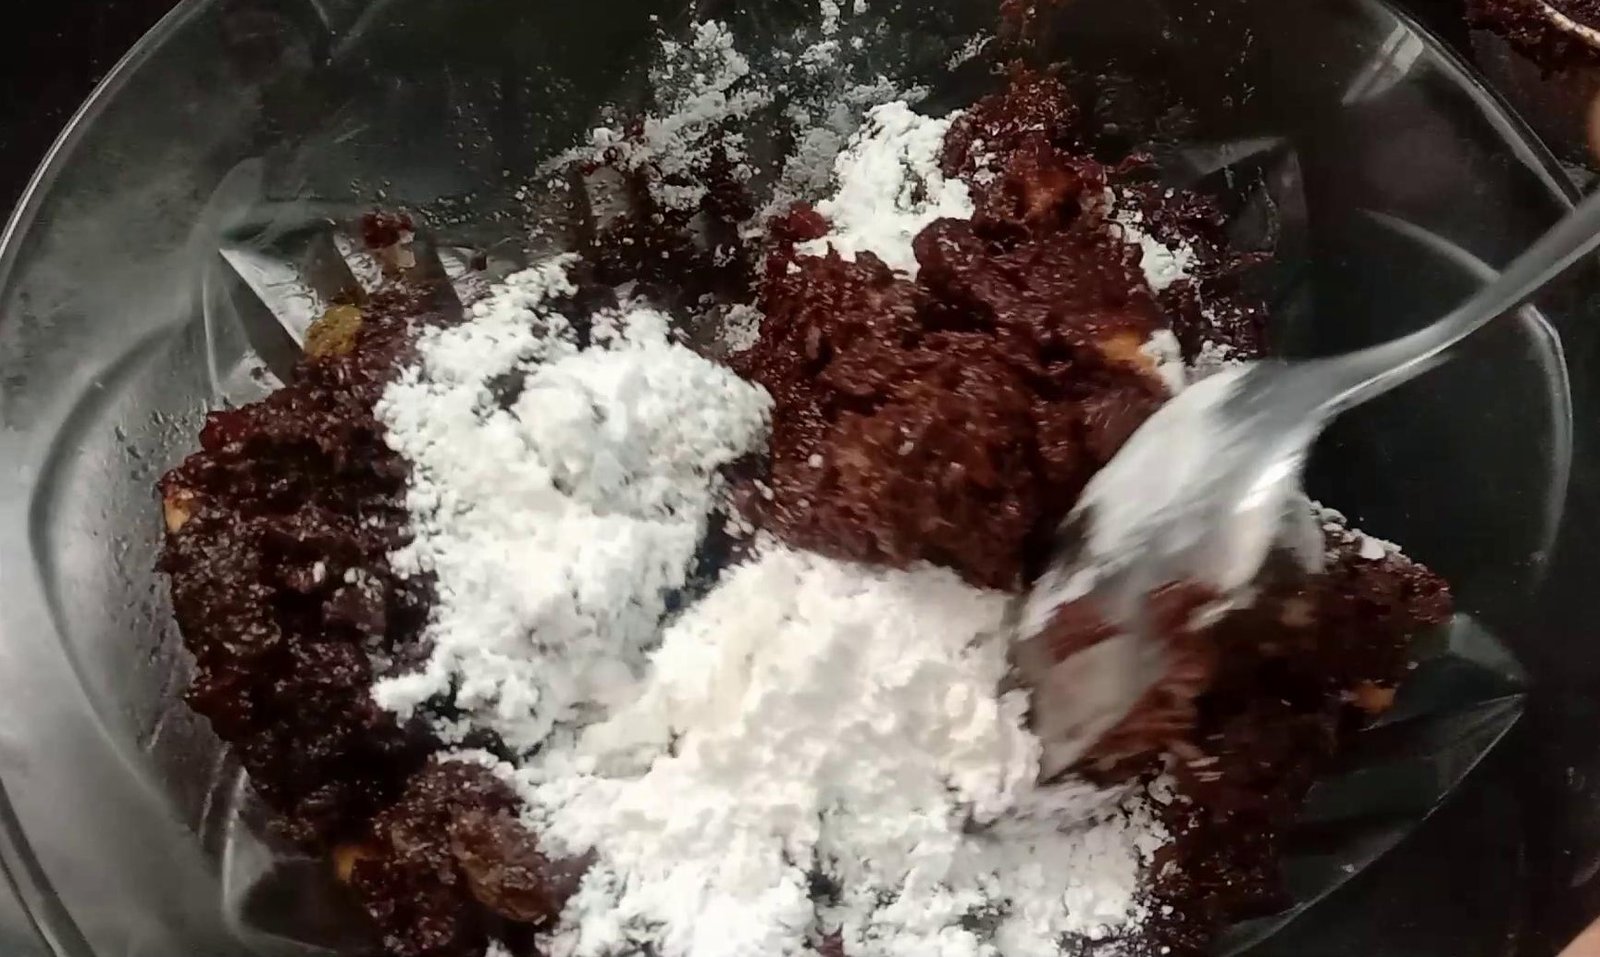 Adding powdered sugar to pudding, Chocolate Bread Pudding | Bread Pudding Recipe